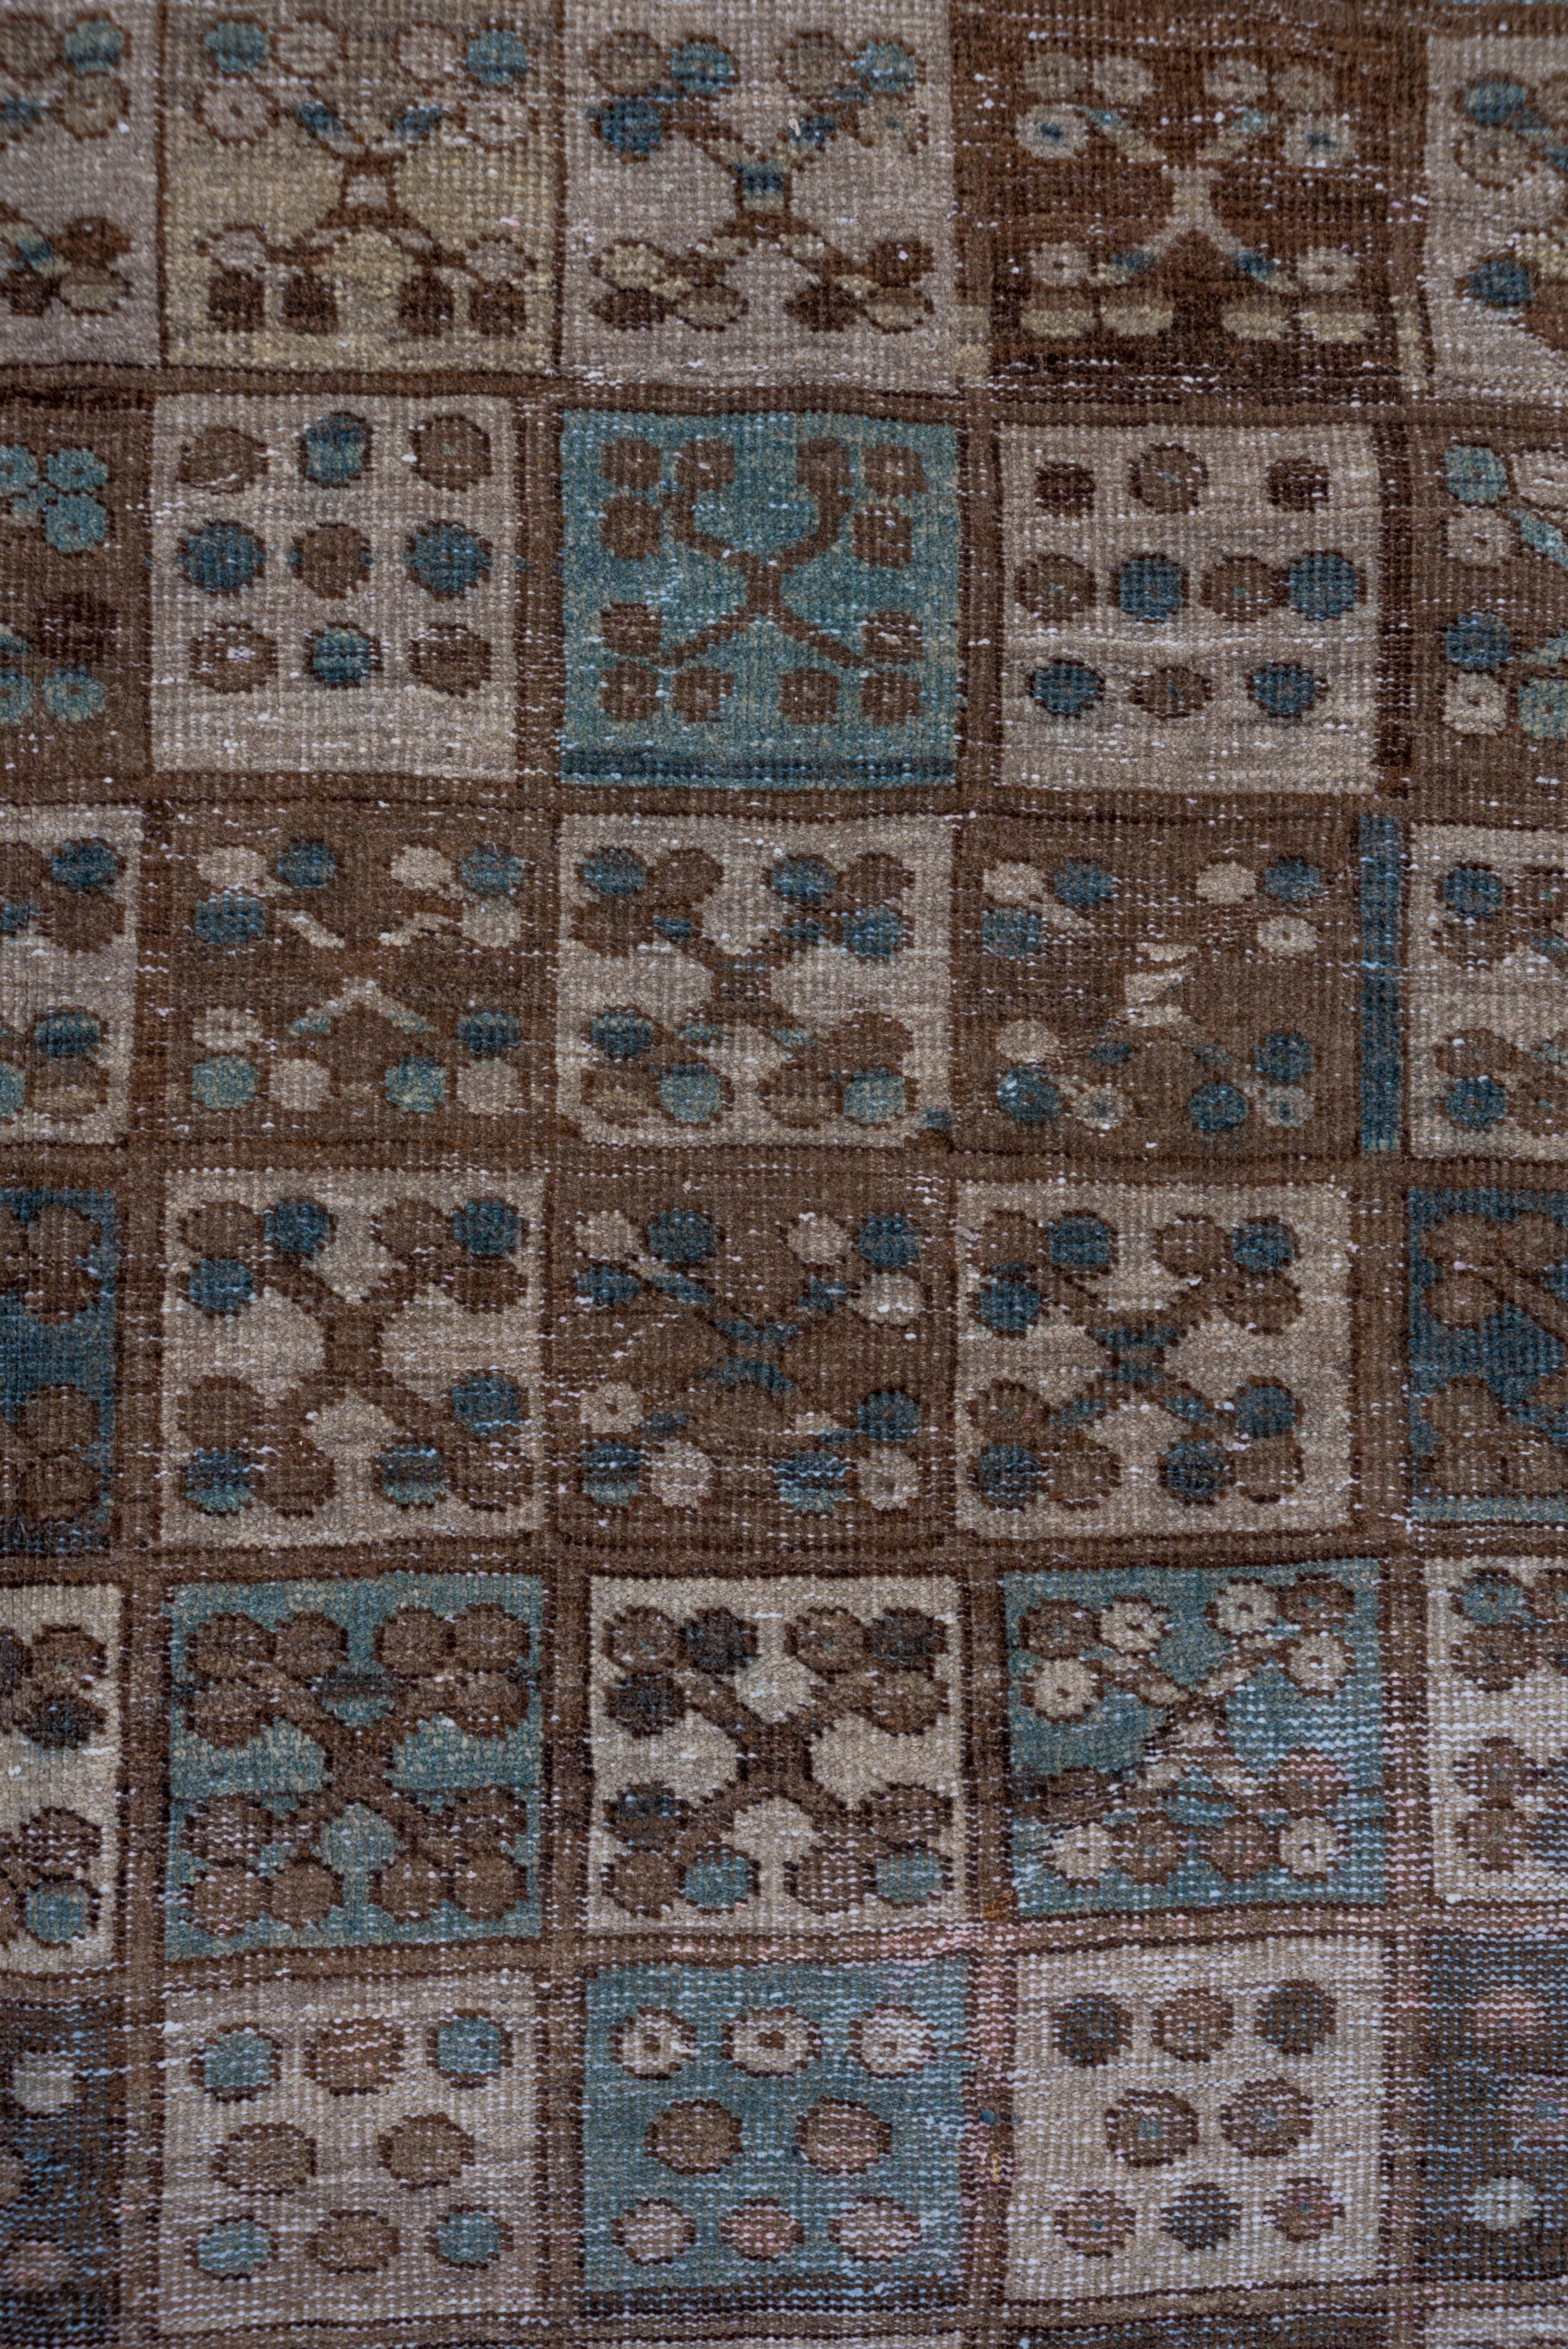 Das Feld ist vollständig von einem sechsspaltigen, quadratischen Muster mit vier Kleeblättern in jedem Feld bedeckt. Hakenkreuzbordüre im turkmenischen Stil mit Rauten und Quadraten. Es überwiegen Braun- und Beigetöne mit ein paar hellblauen Flecken.